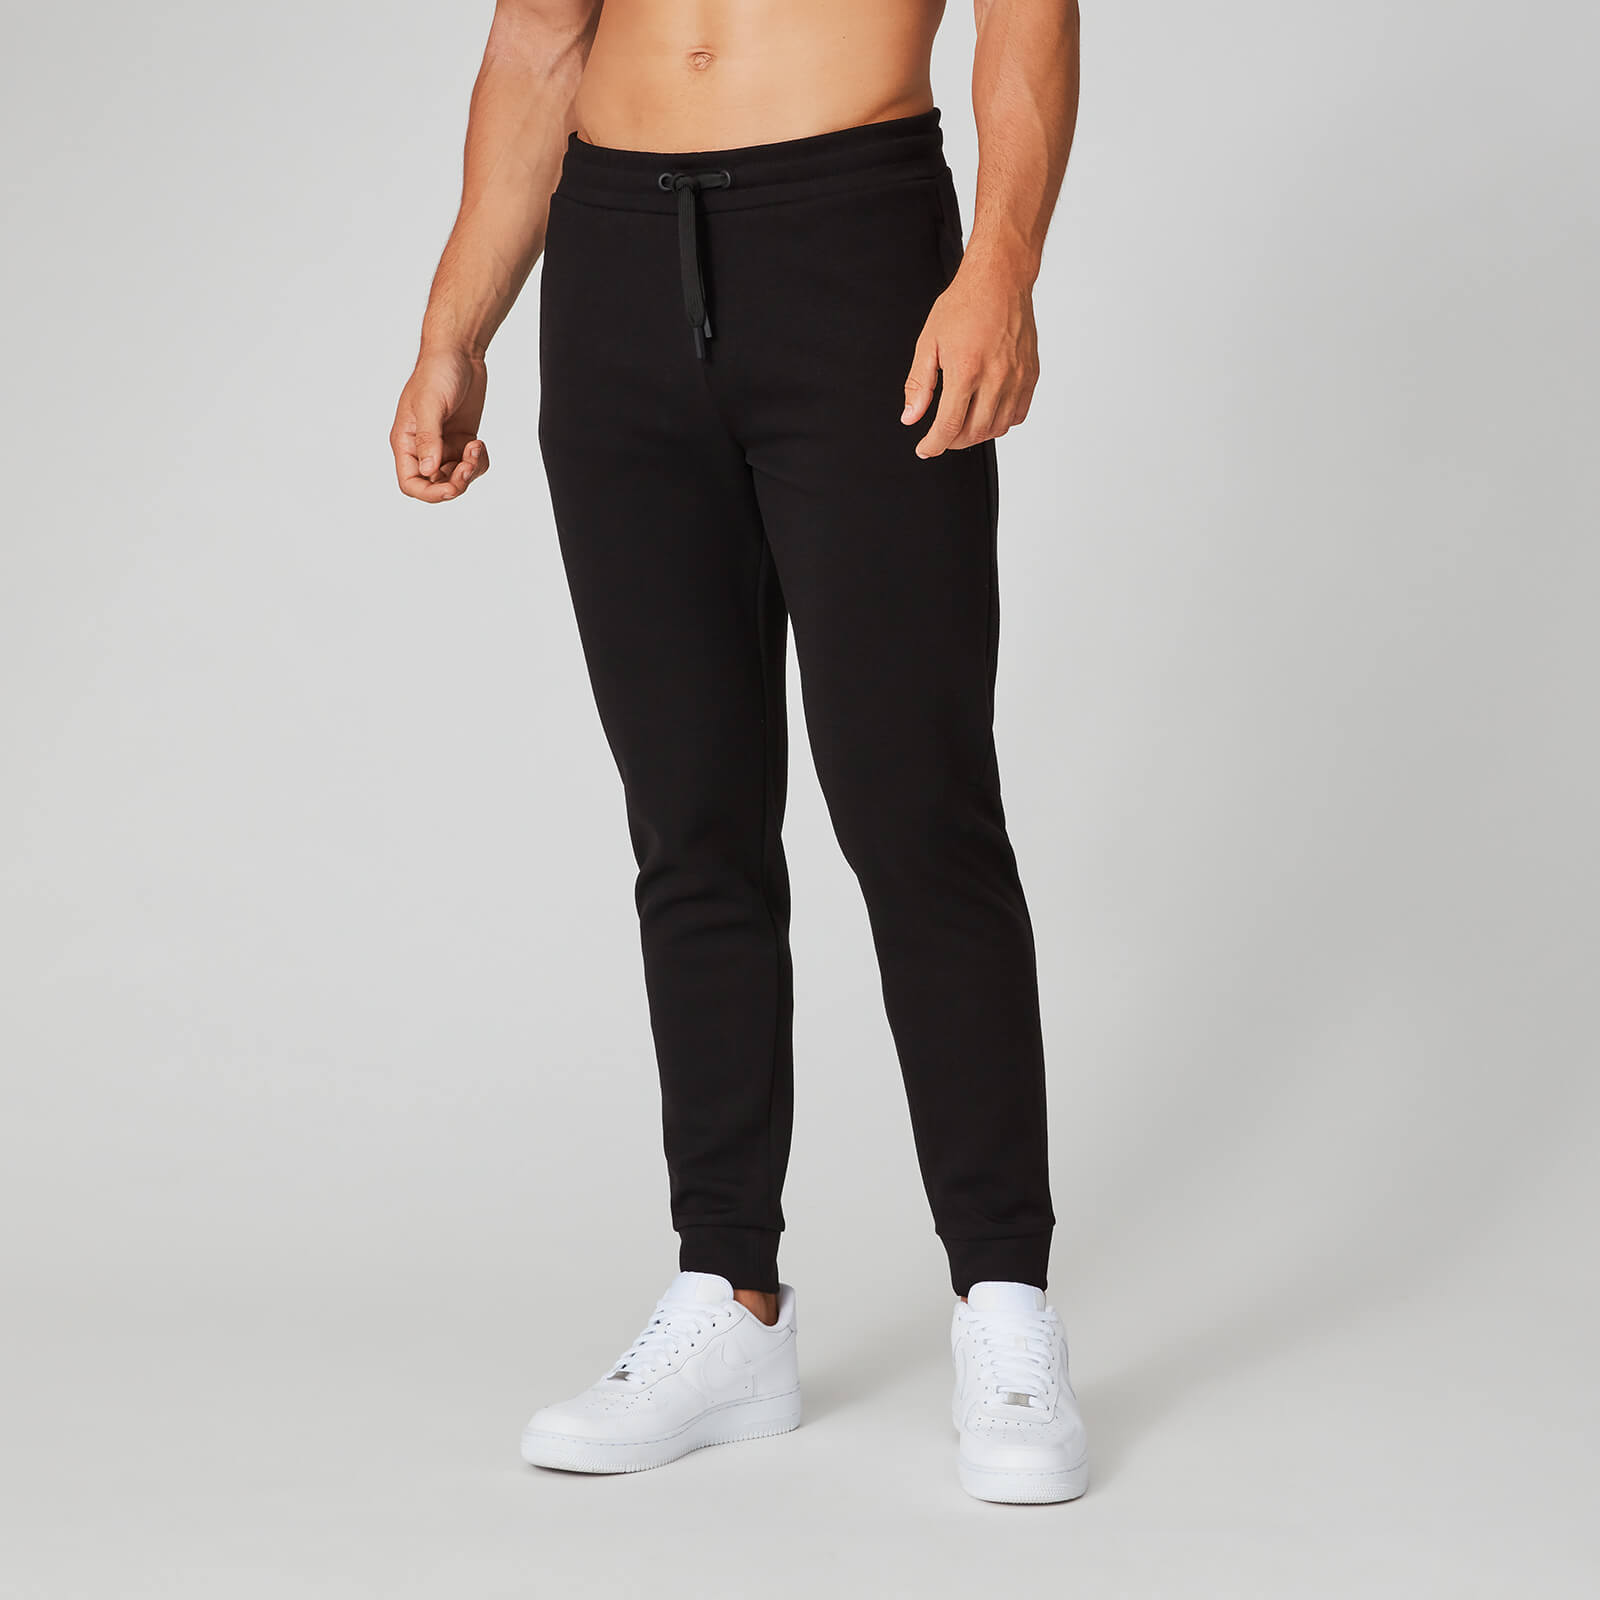 Pantalon de jogging Form Pro - Noir - XS